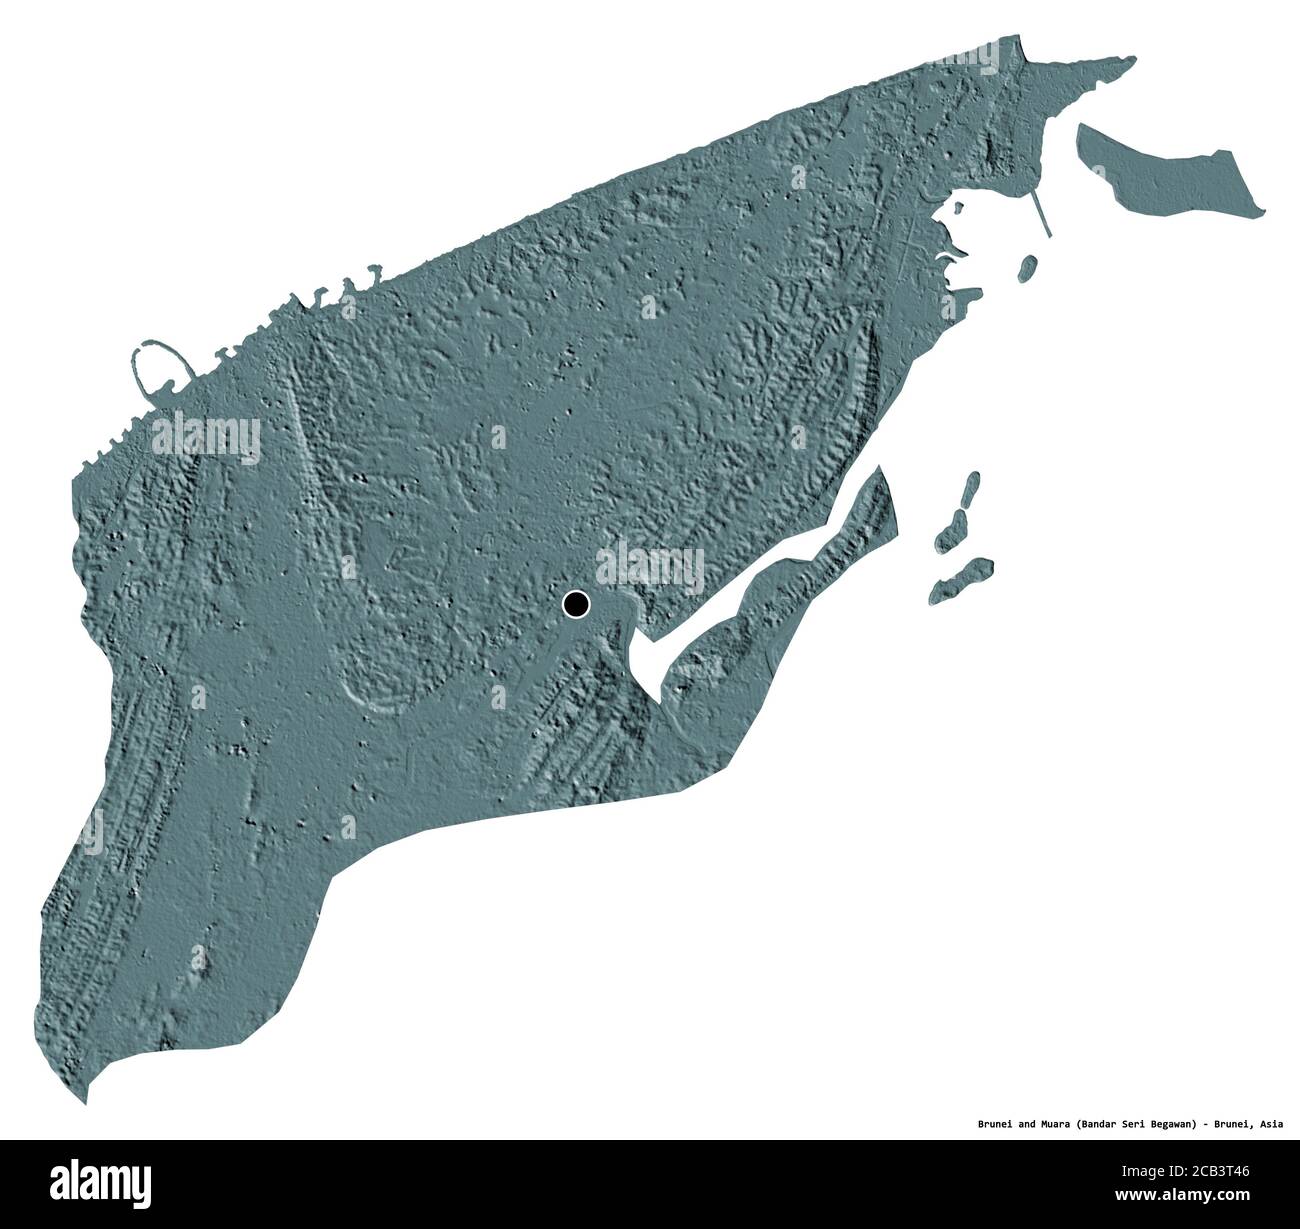 Forma di Brunei e Muara, distretto di Brunei, con la sua capitale isolata su sfondo bianco. Mappa di elevazione colorata. Rendering 3D Foto Stock